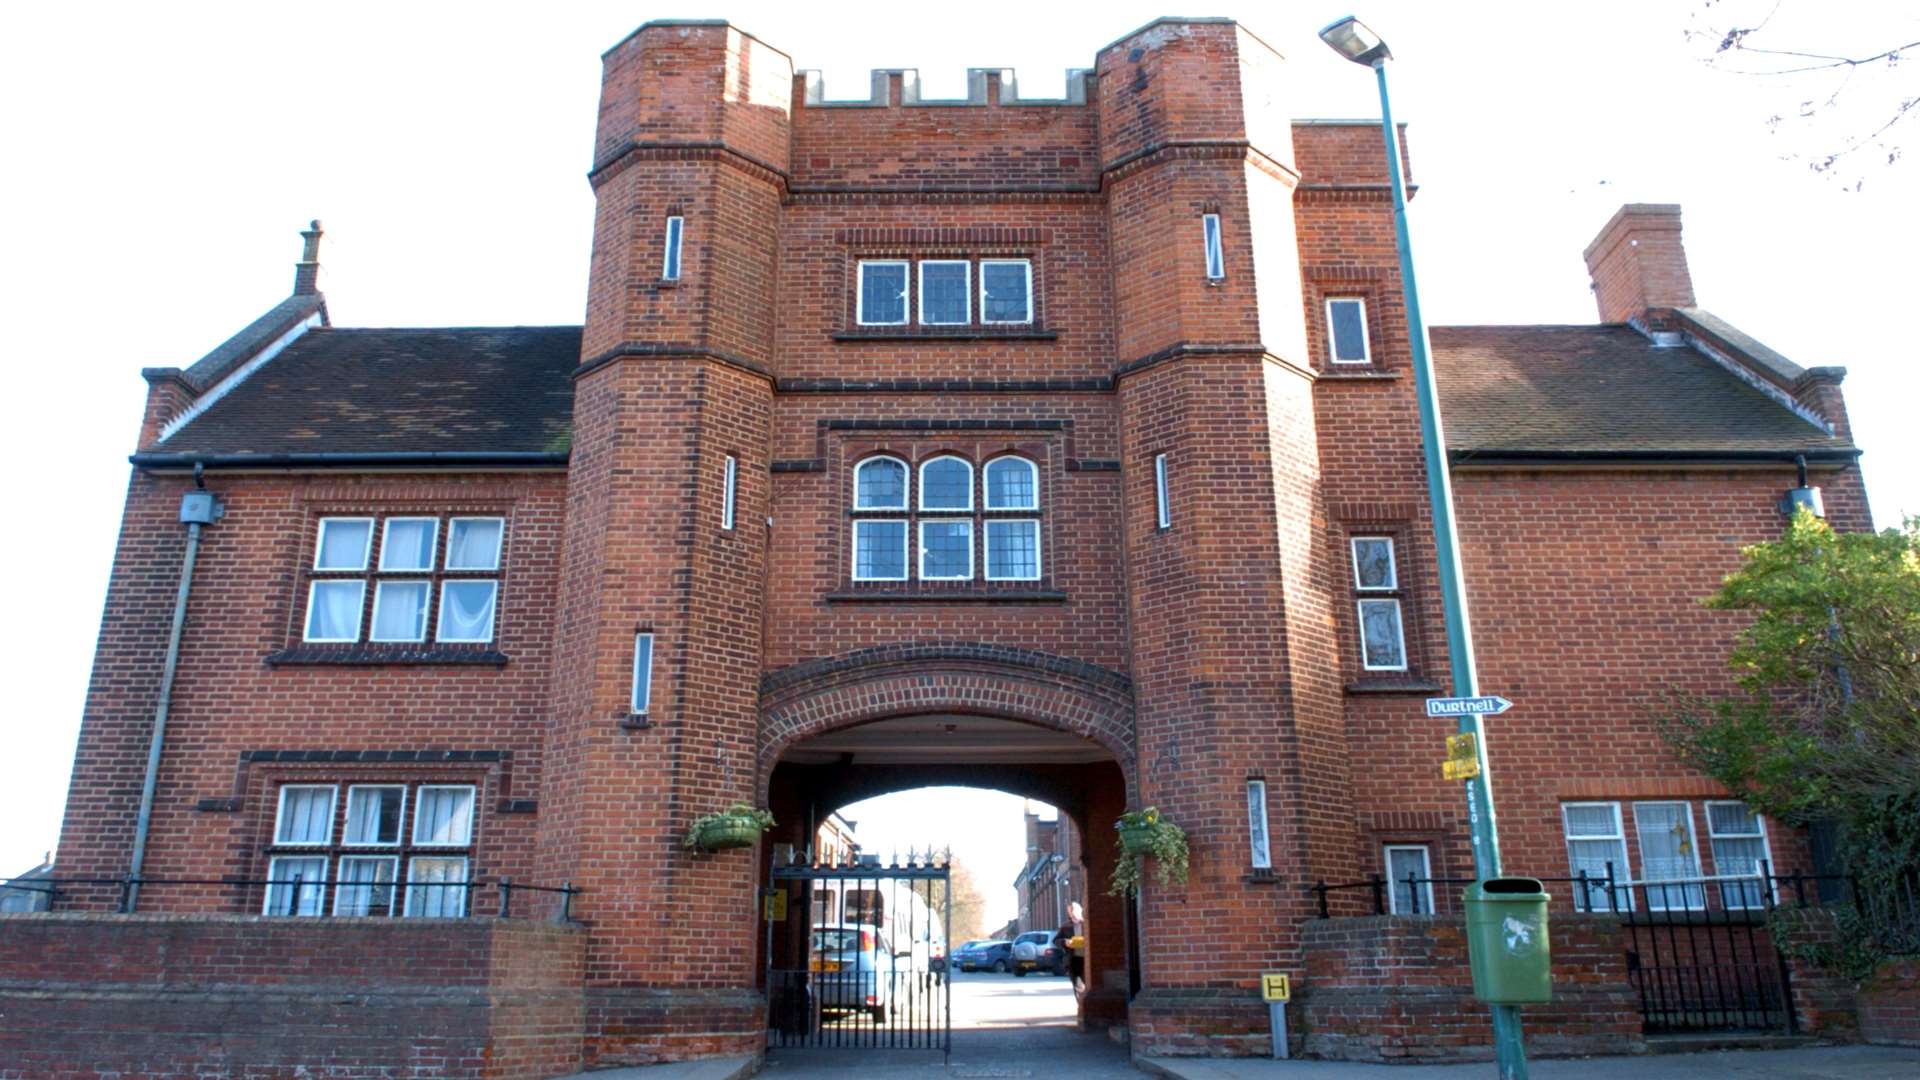 Maidstone Grammar School for Boys